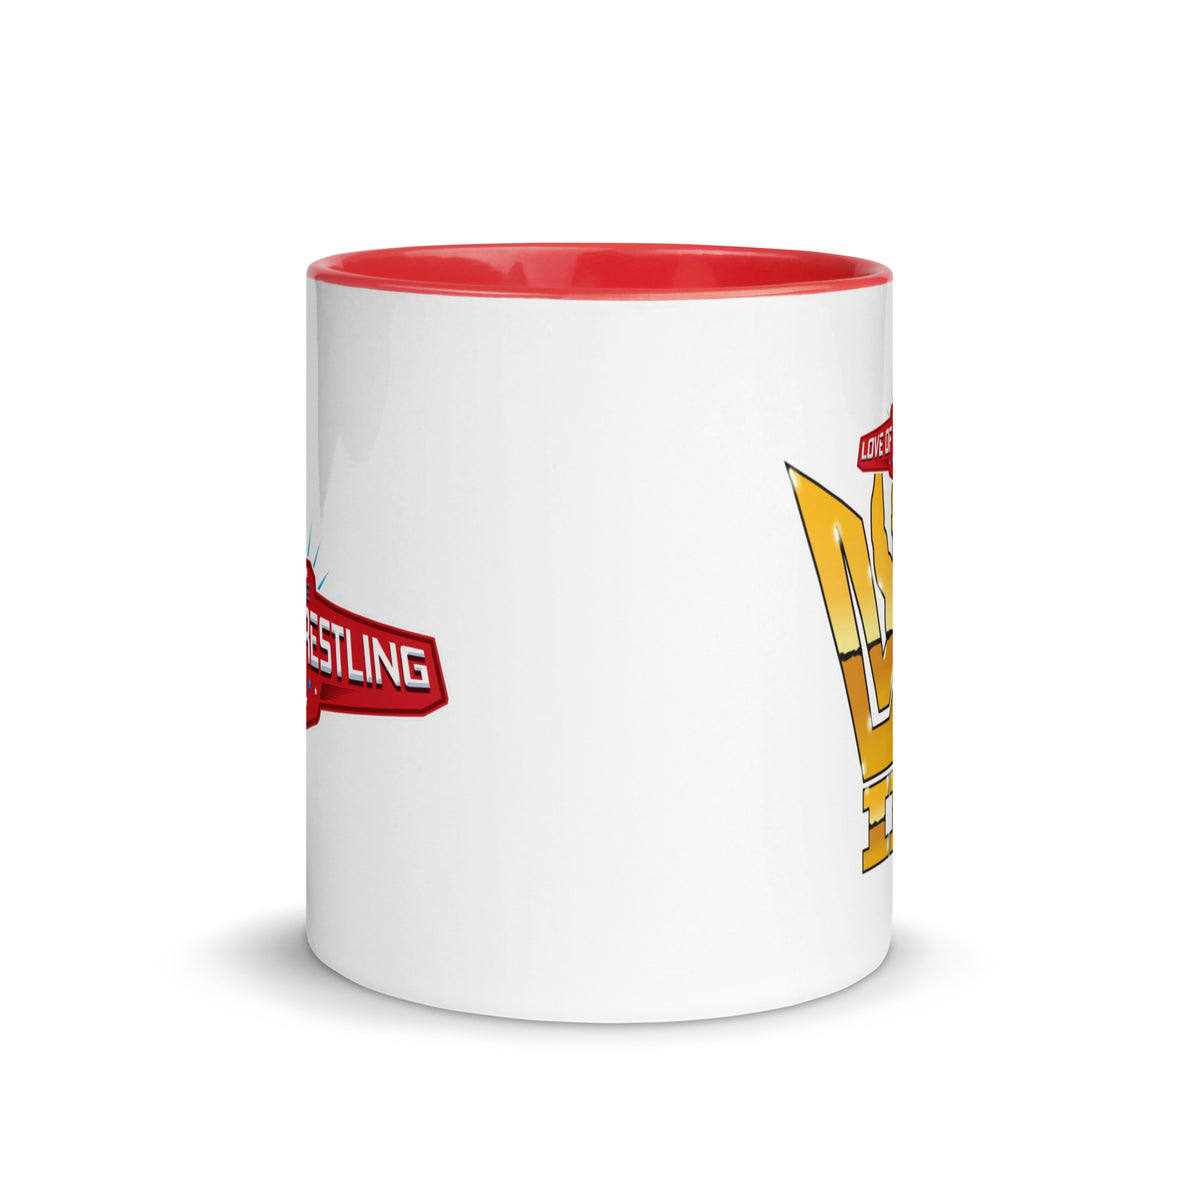 FTLW 2023 Logo Mug with Red Color Inside